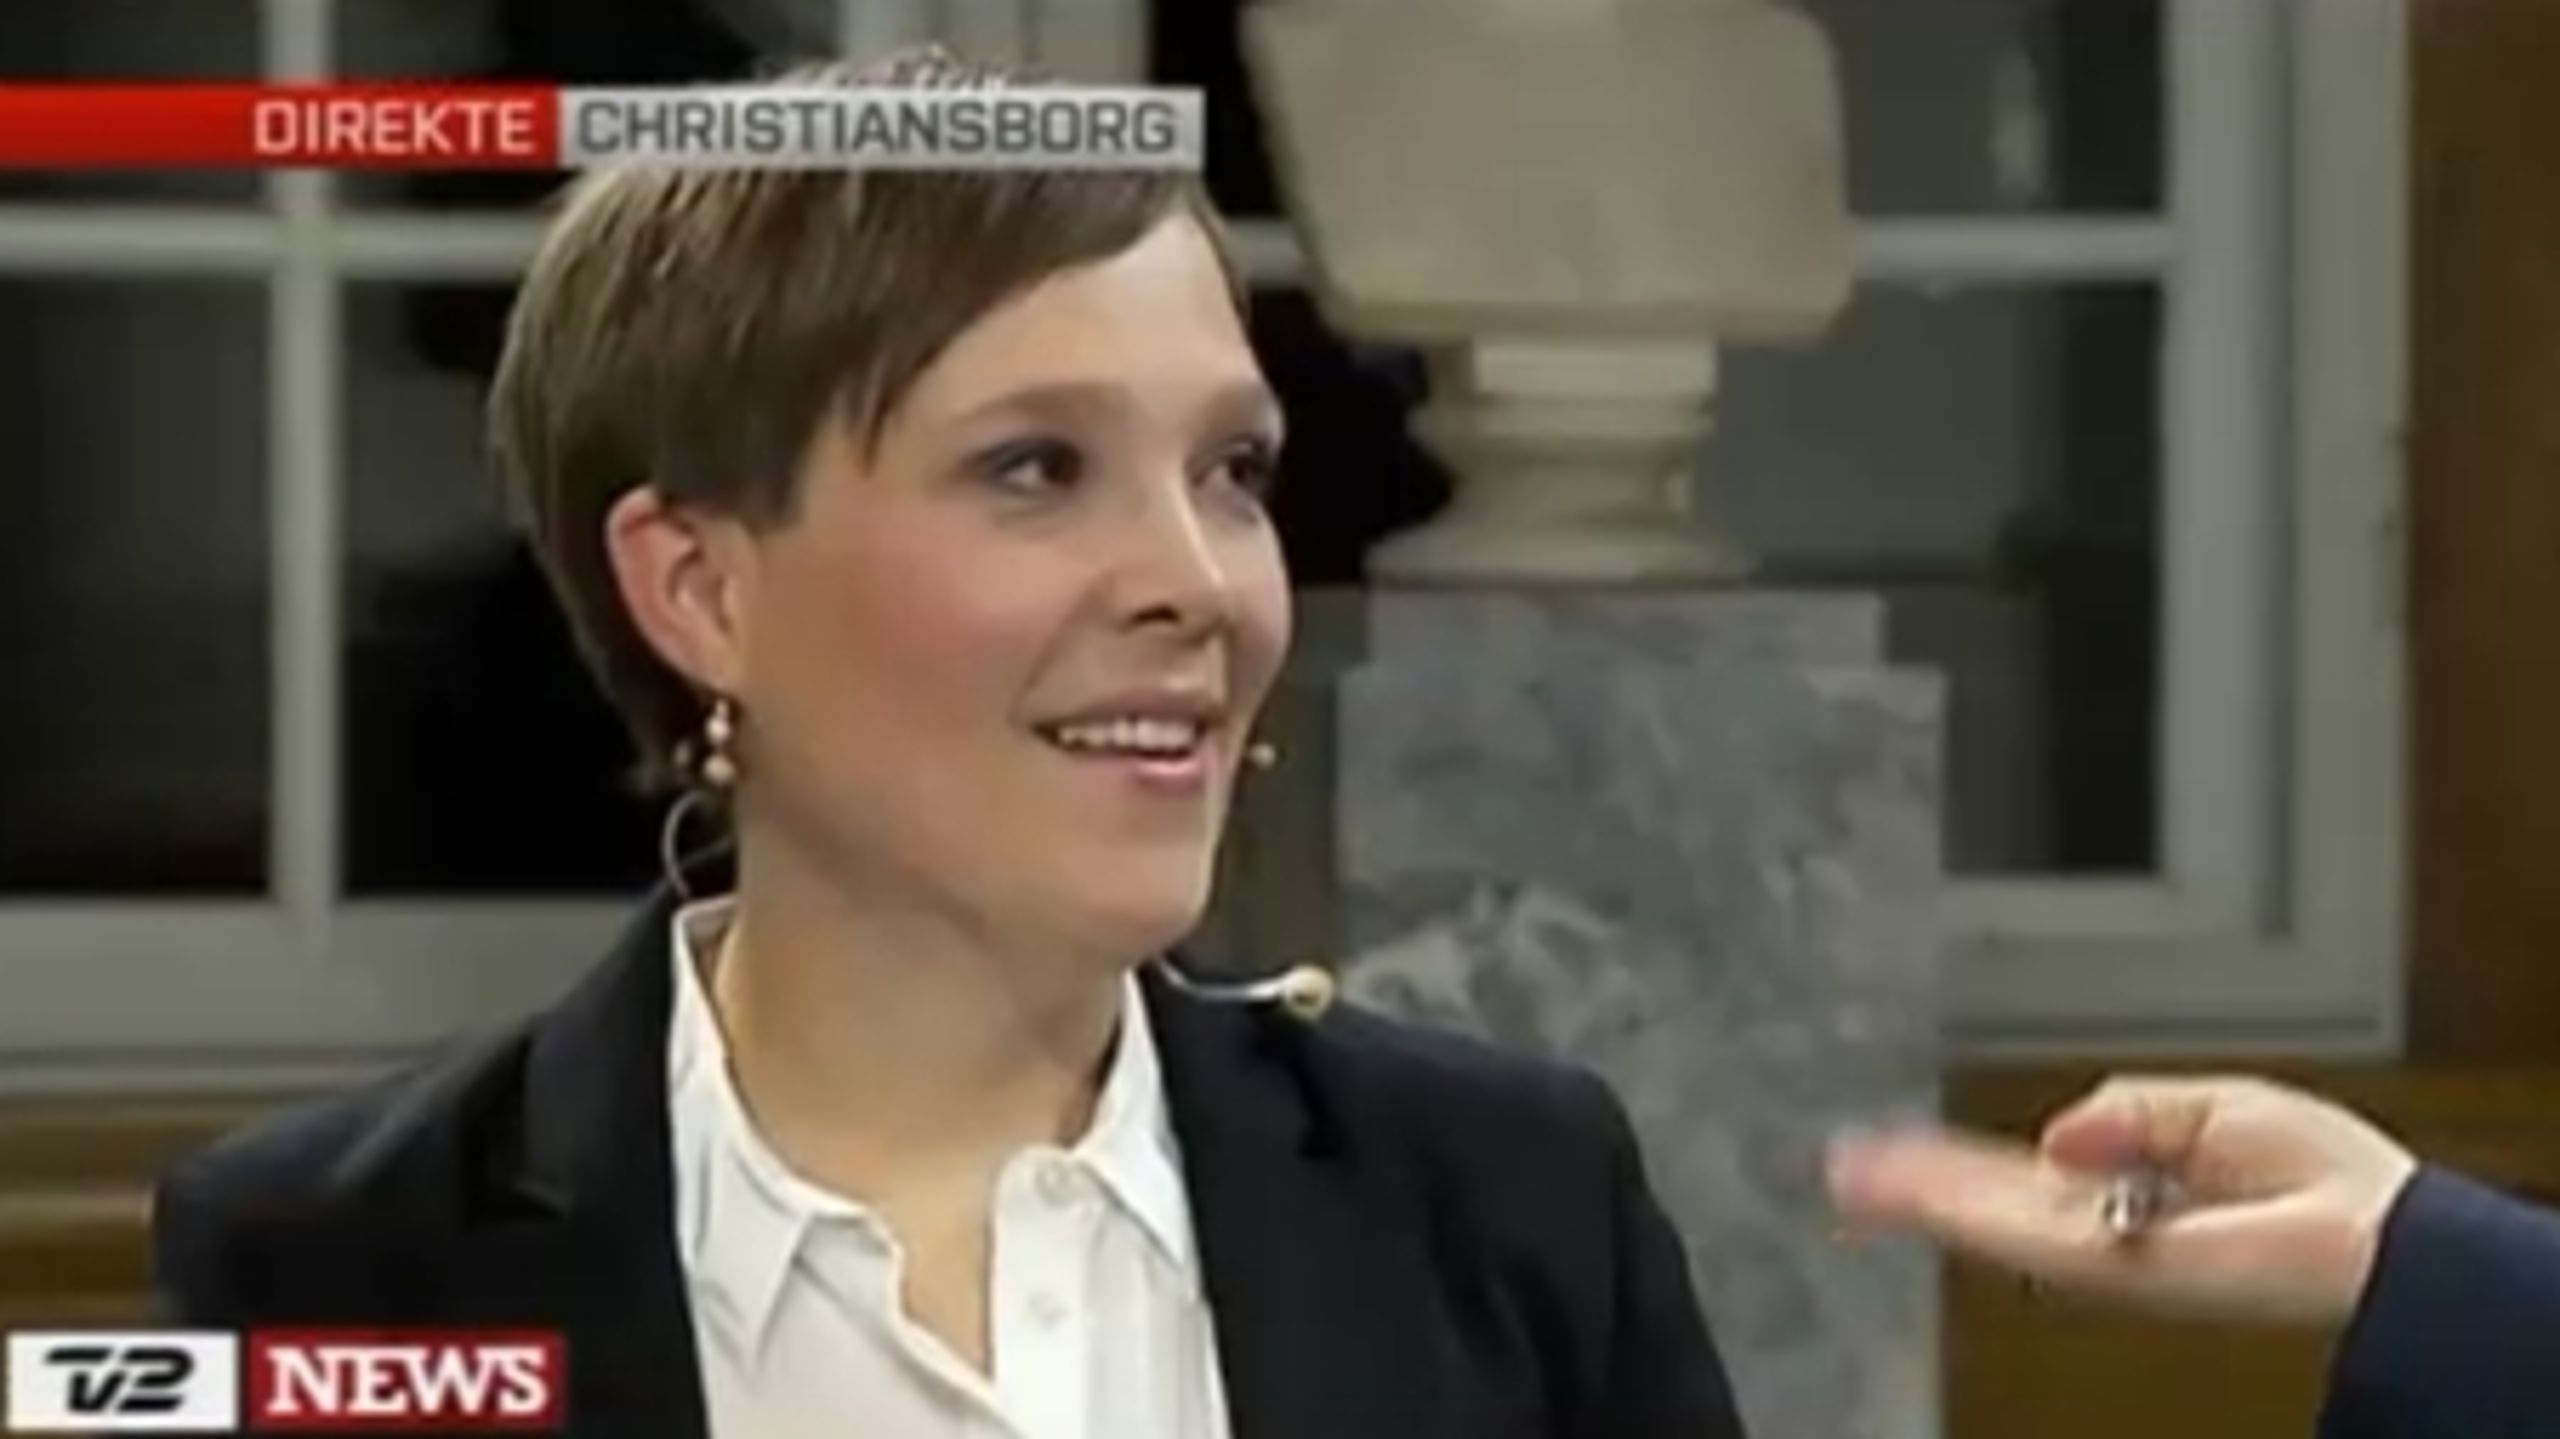 Astrid Krag var i front fra start til slut i tv-debatten, skriver Altinget.dks Erik Holstein i sin anmeldelse af duellen på TV 2 NEWS.